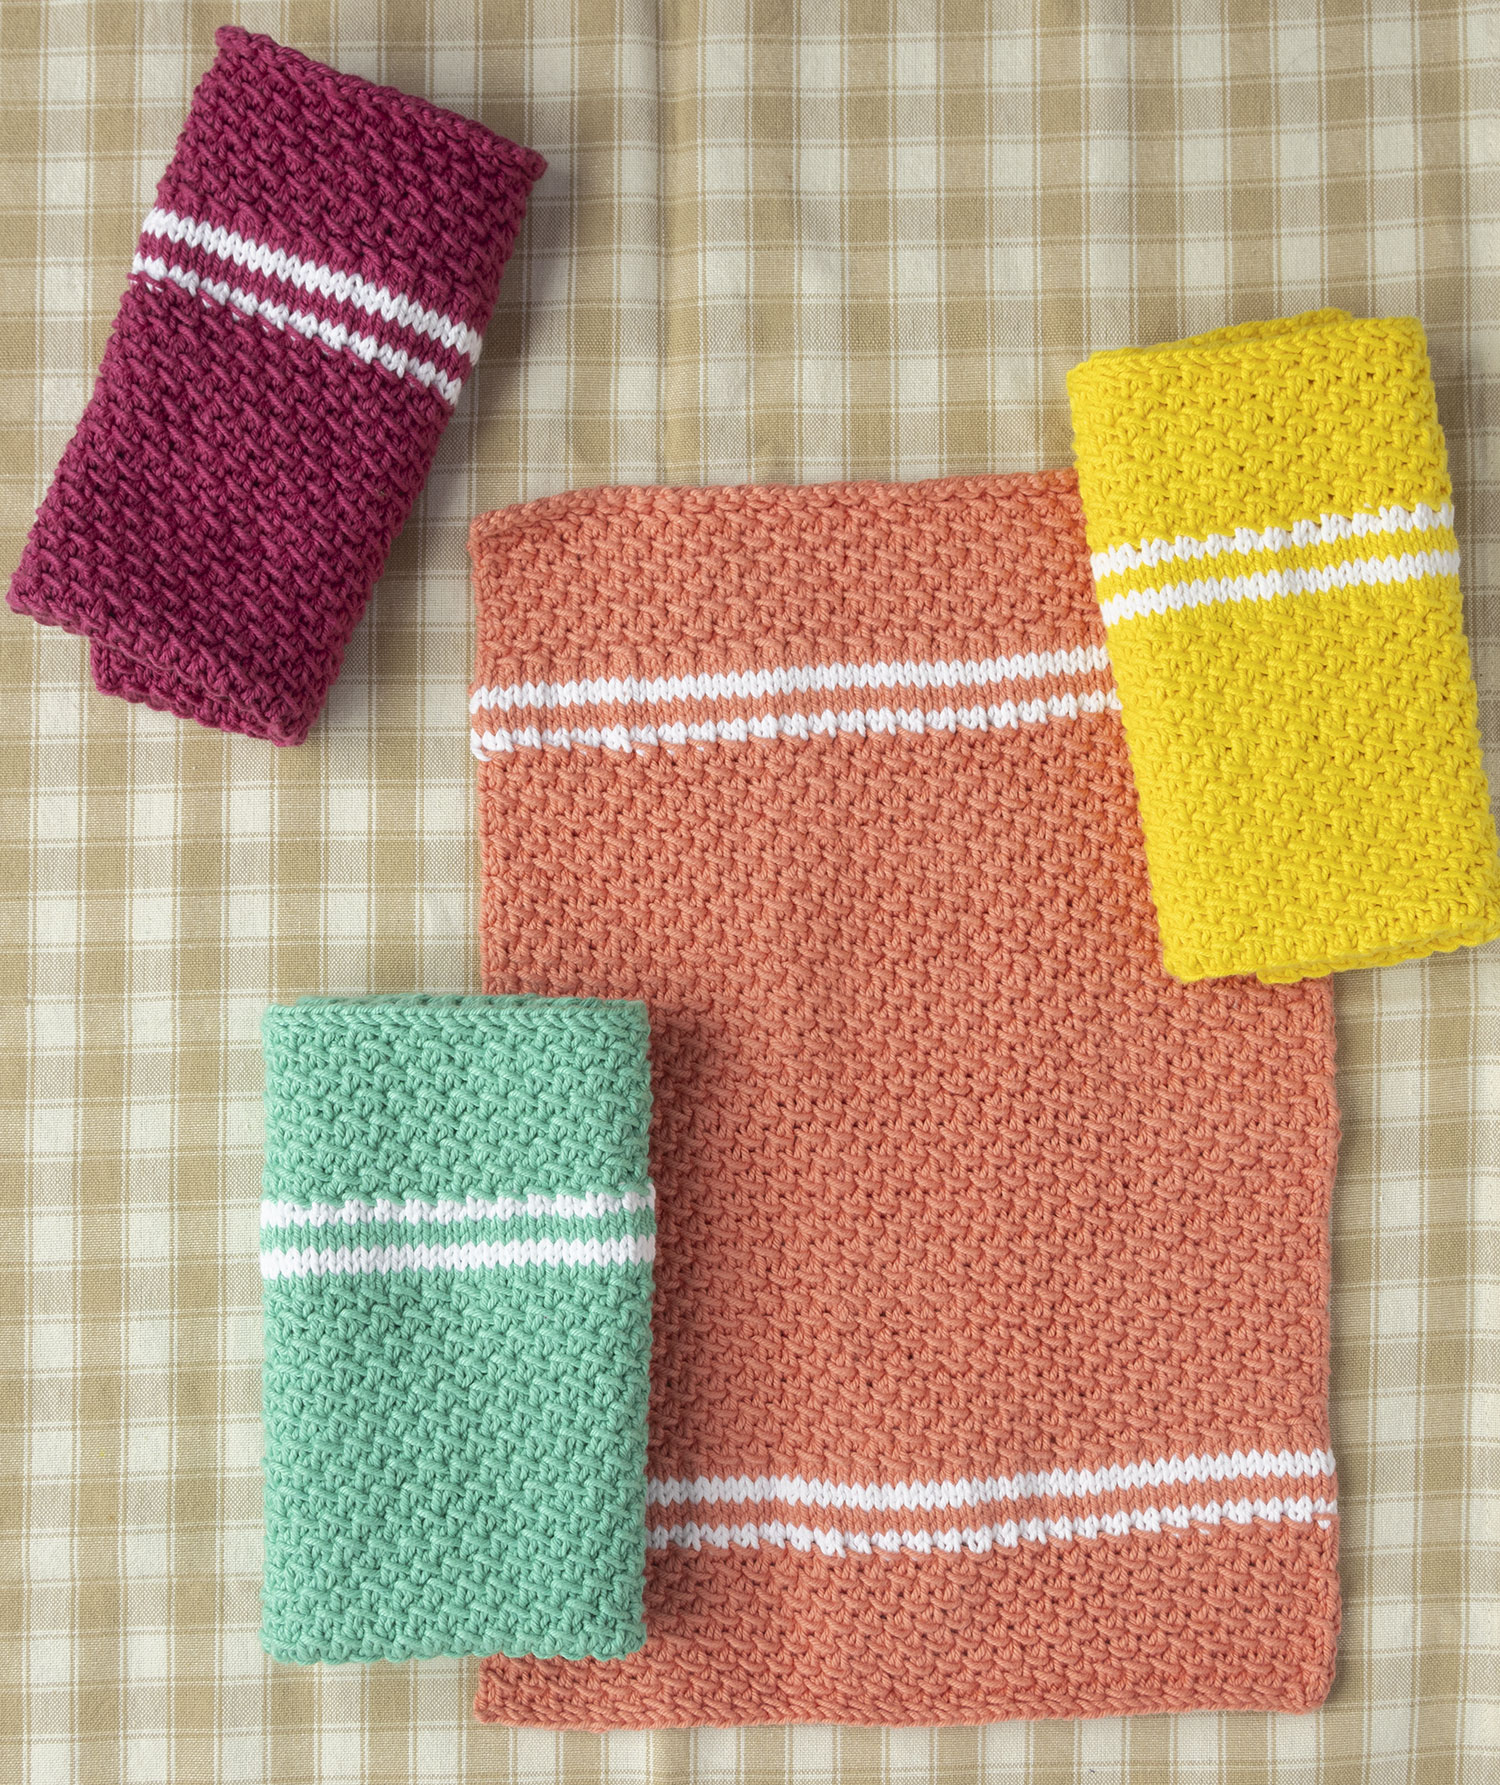 Dish Towel Set Pattern - Knitting Patterns and Crochet ...